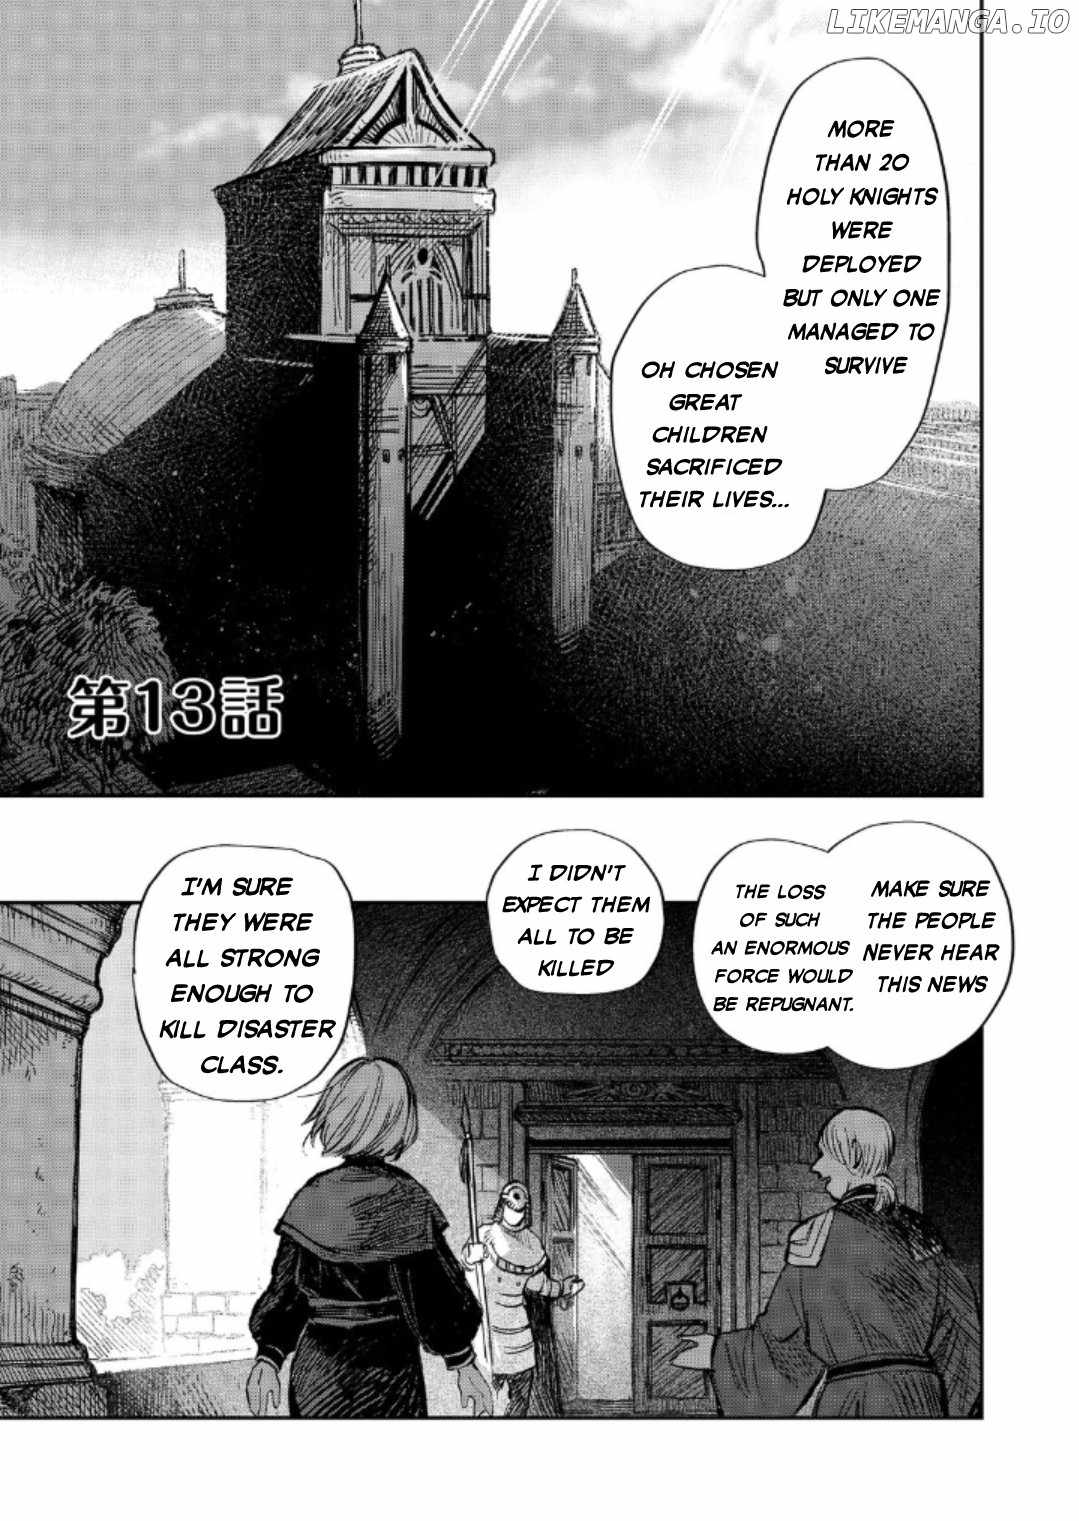 Meiou-sama ga Tooru no desu yo! Chapter 13-eng-li - Page 1